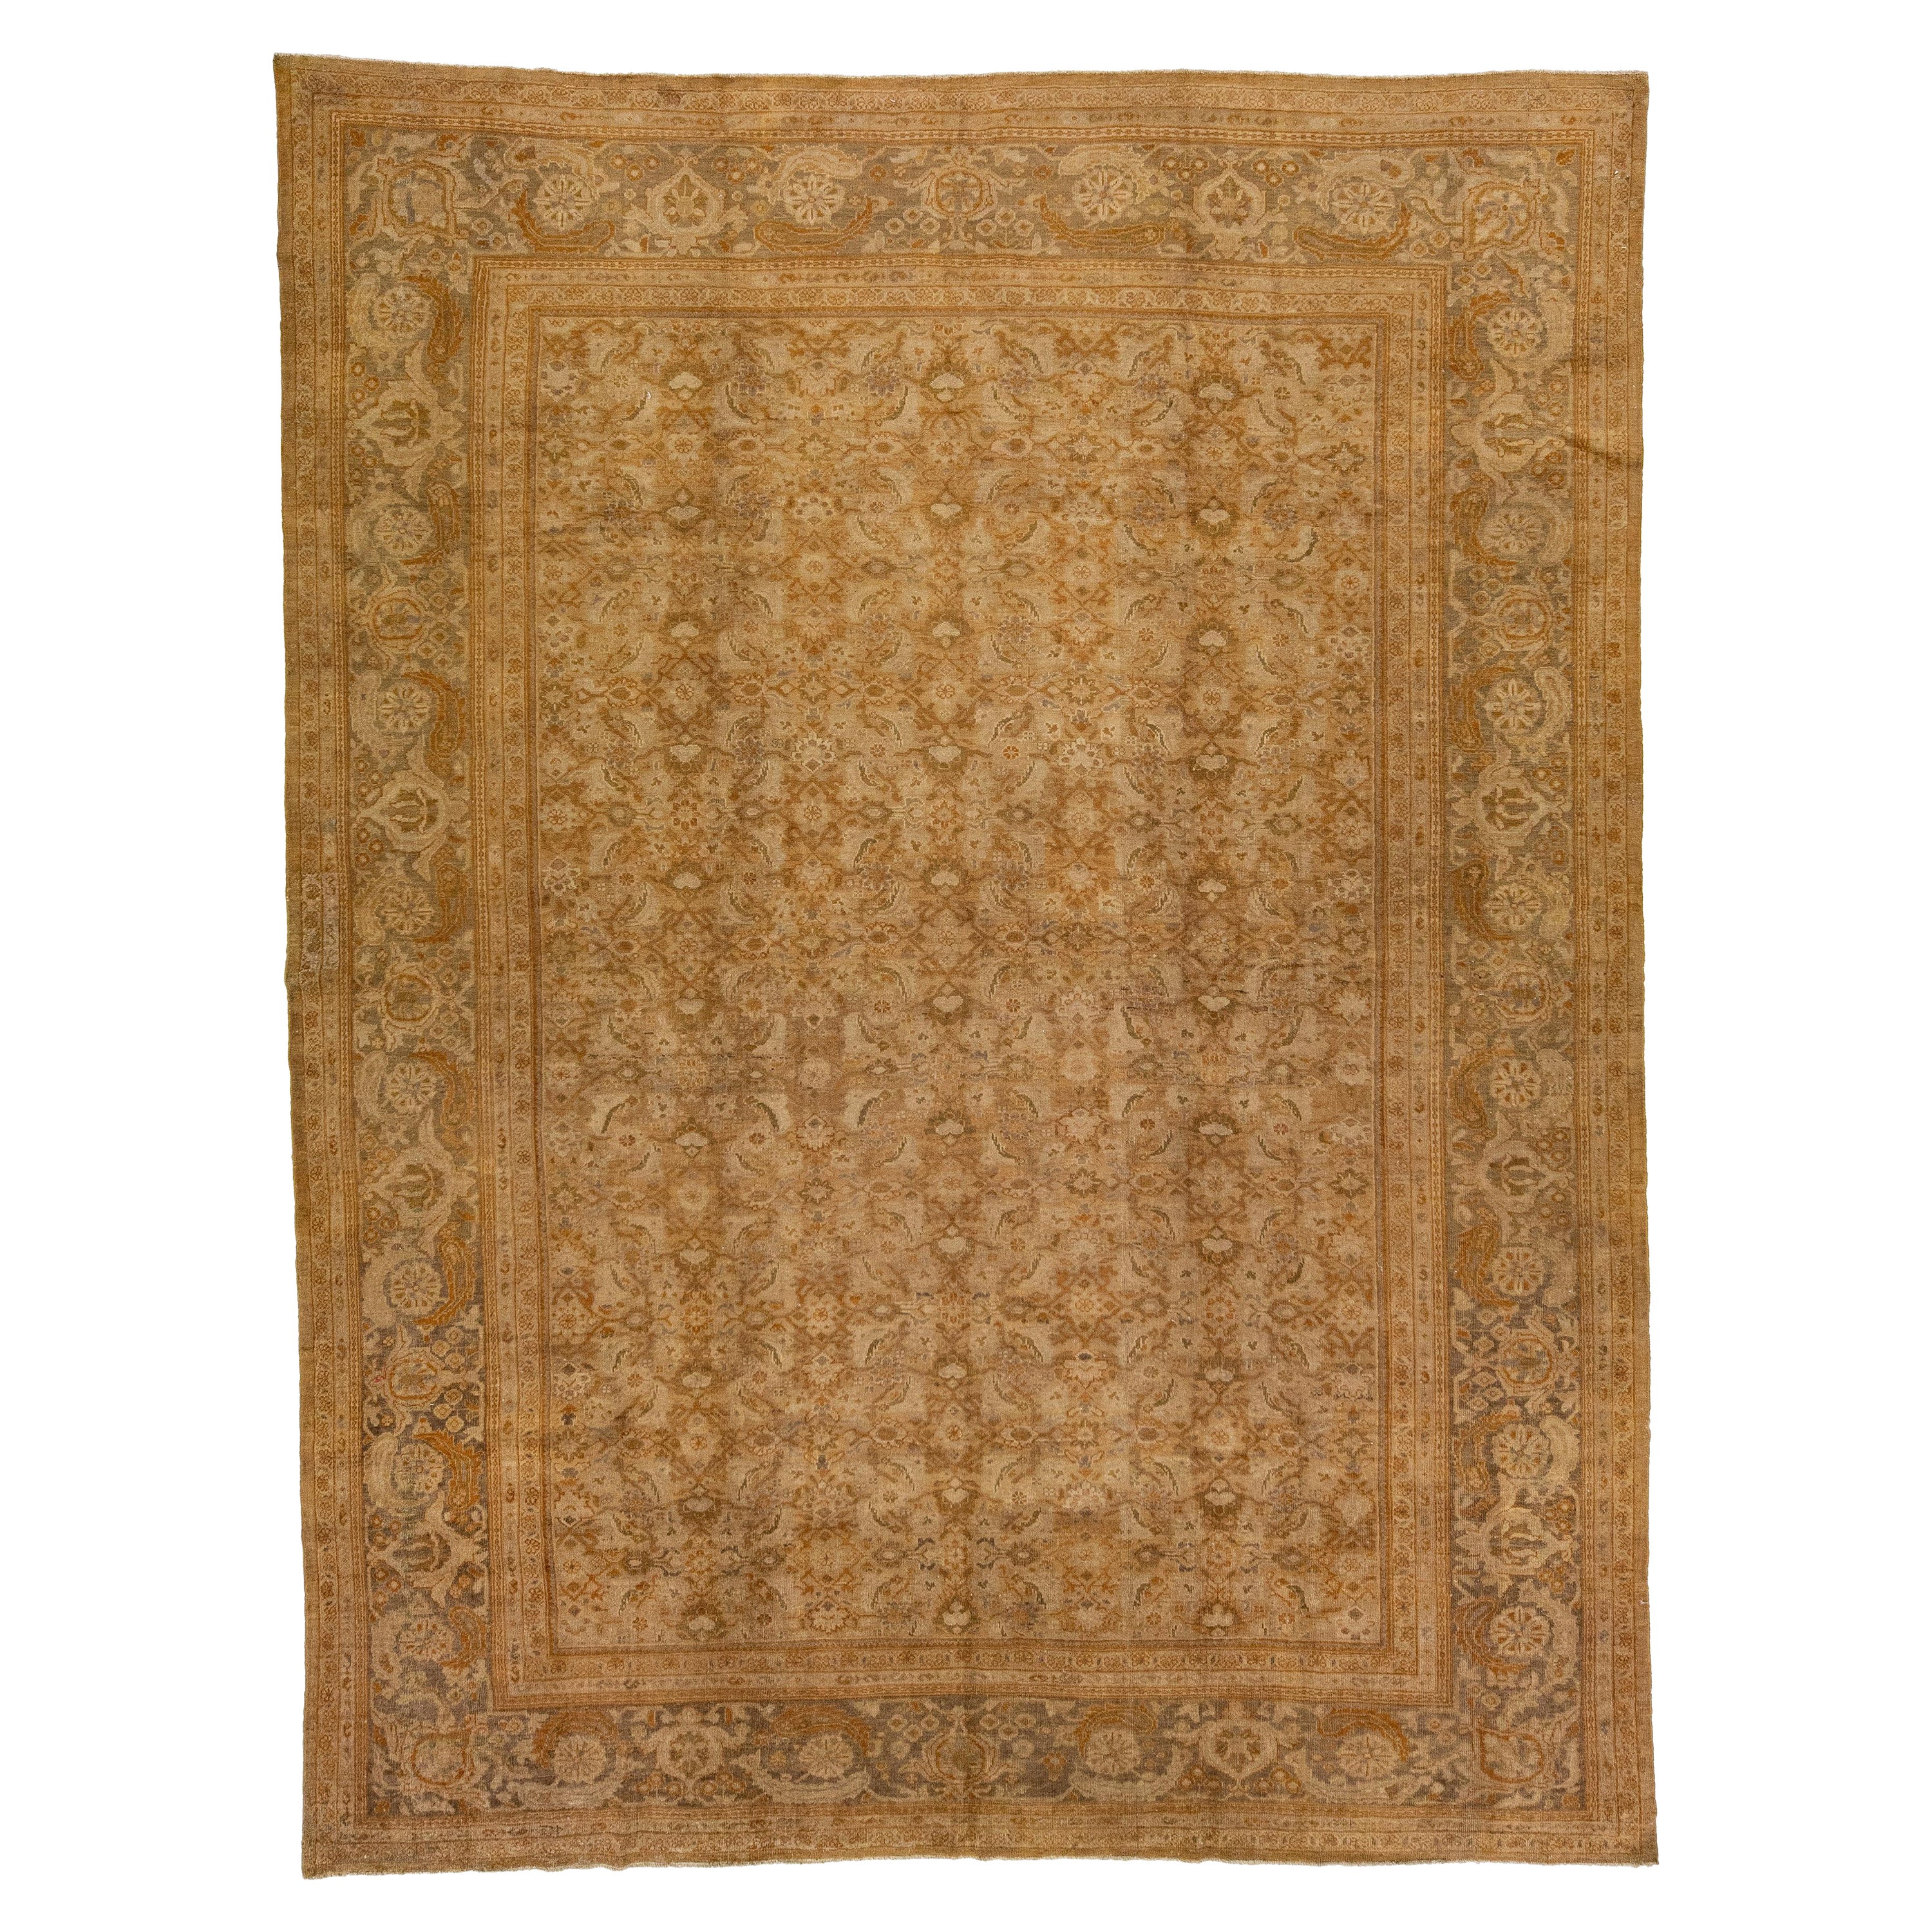 Tapis ancien en laine brun clair Sultanabad fait à la main avec motifs floraux sur toute la surface